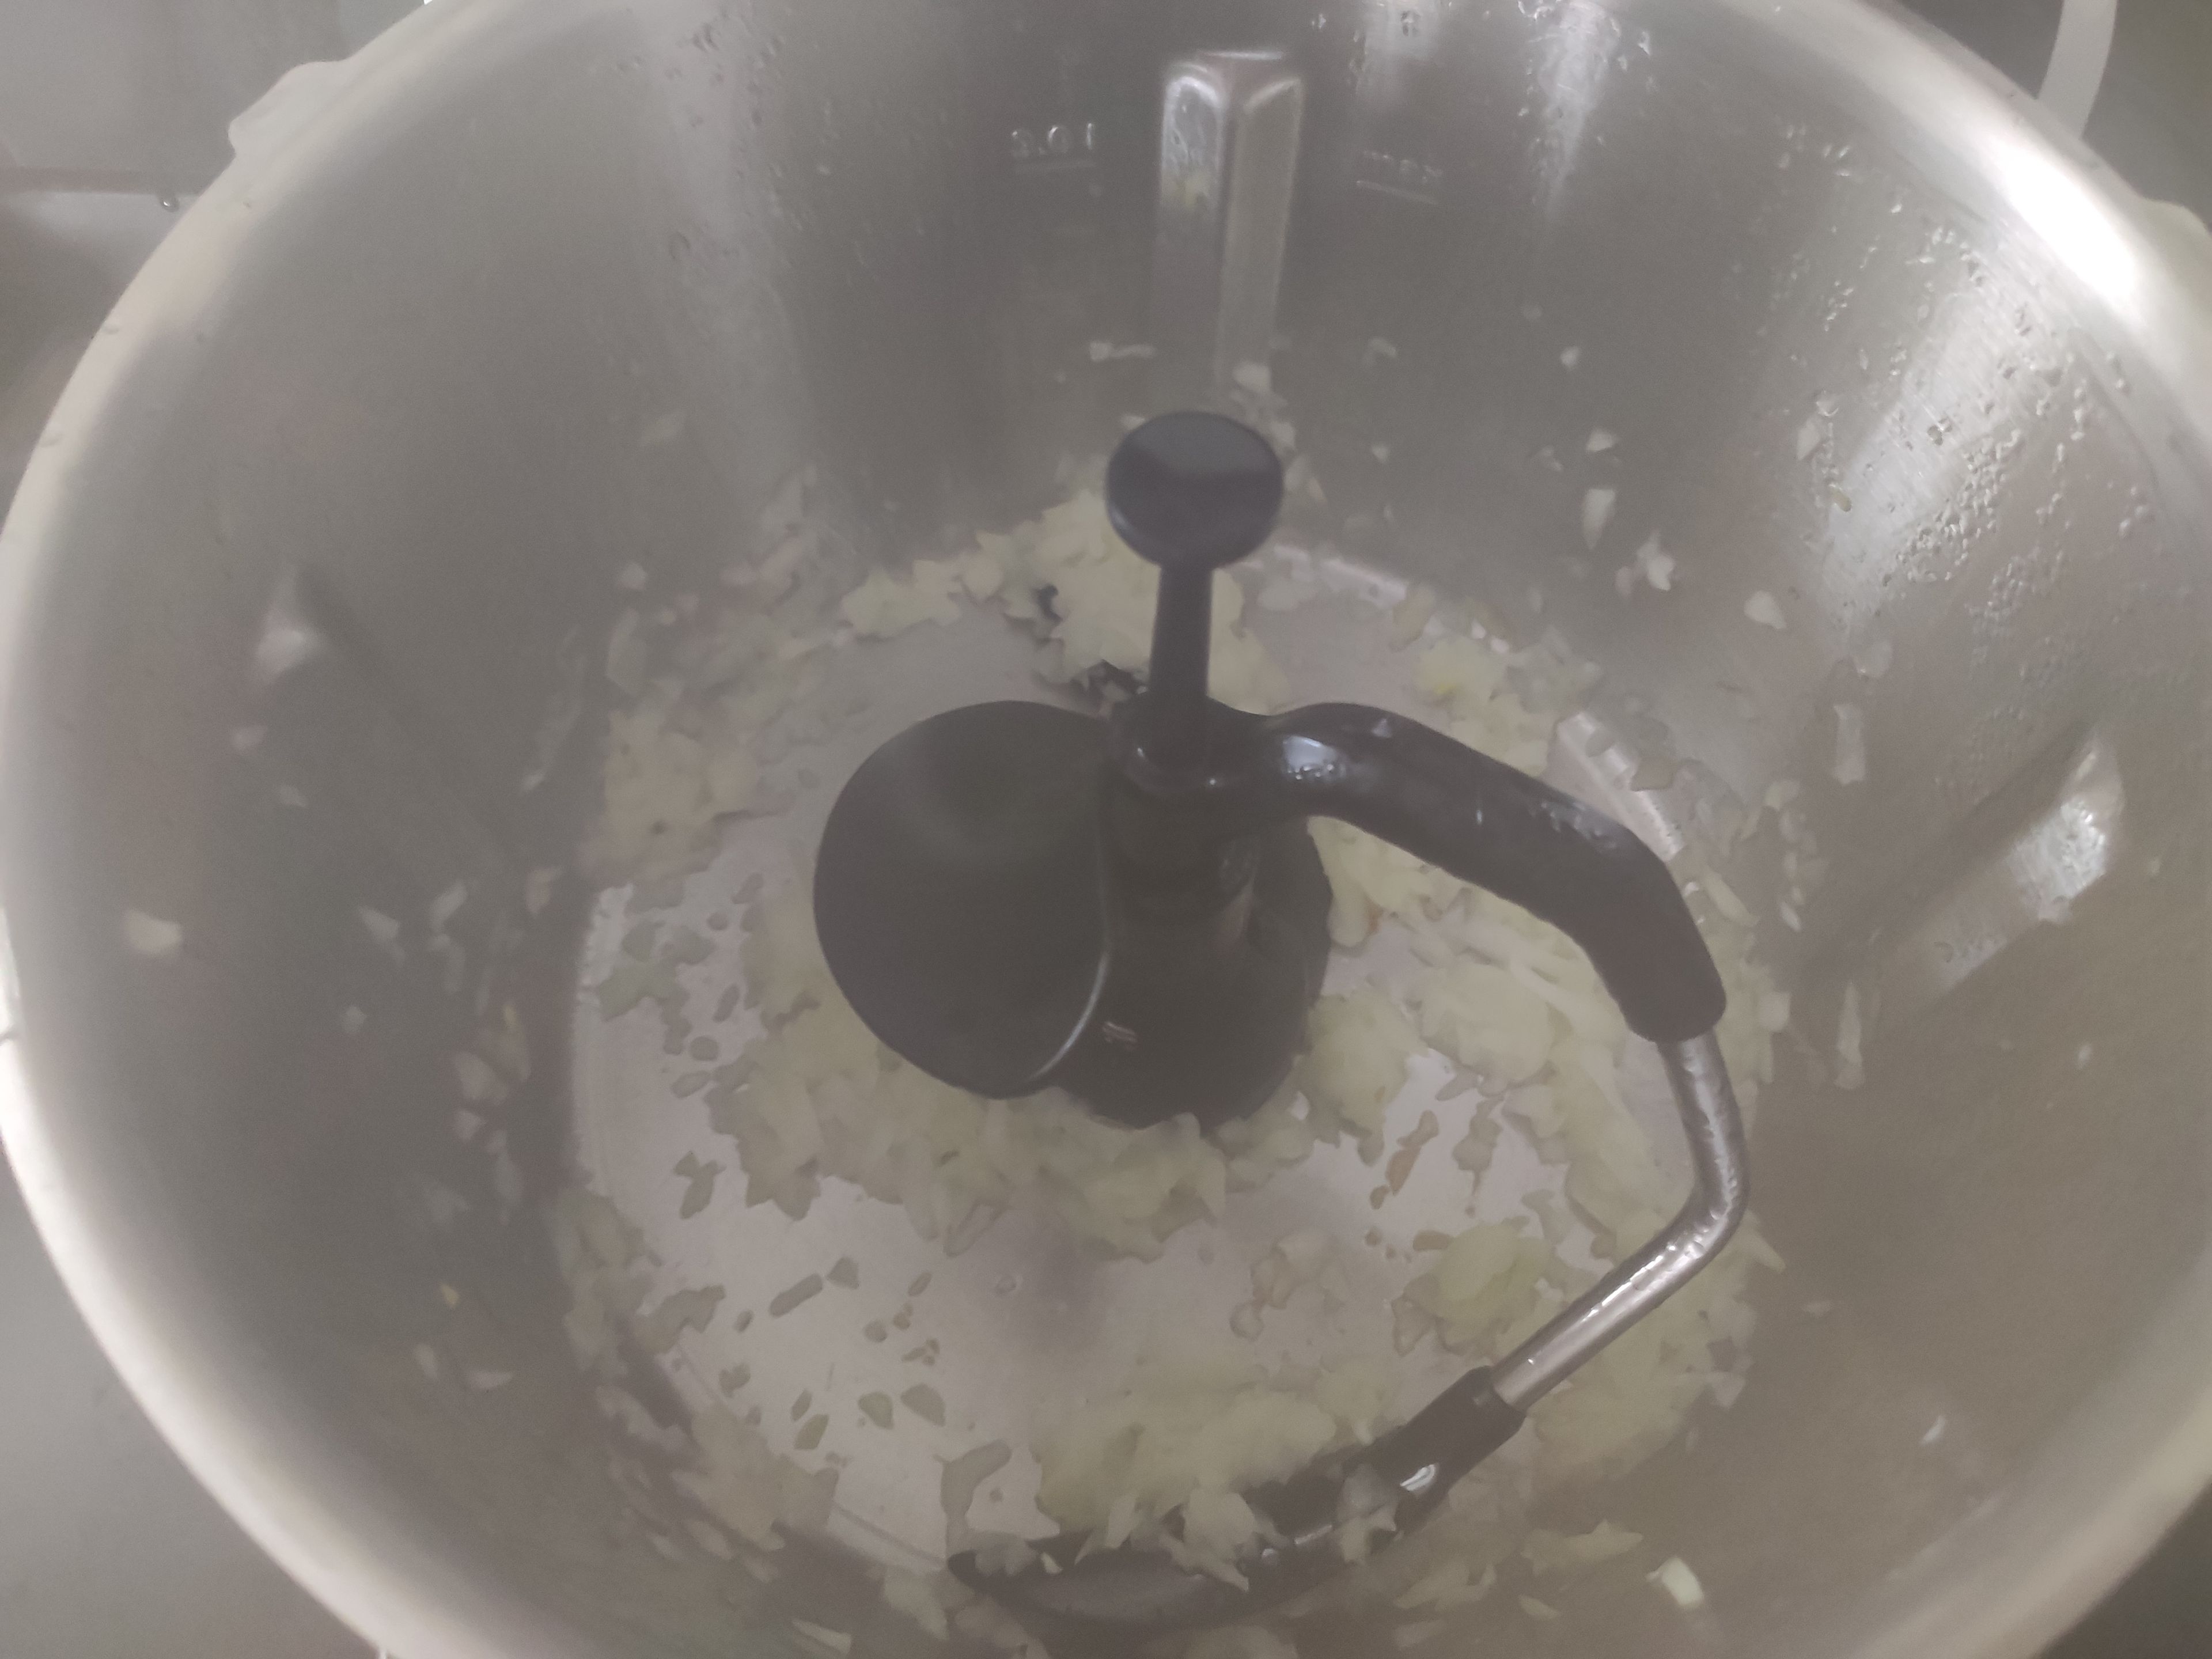 Das Cookit Universalmesser herausnehmen und den Cookit 3D-Rührer einsetzten, 20 g Butter hinzugeben und ohne Messbecher andünsten (3D-Rührer I Stufe 4 I 120°C I 3 Min.).  
Anschließend das geschnittene Gemüse hinzufügen und mit dem Cookit 3D-Rührer anbraten (3D-Rührer I Stufe 4 I 120°C I 7 Min.).